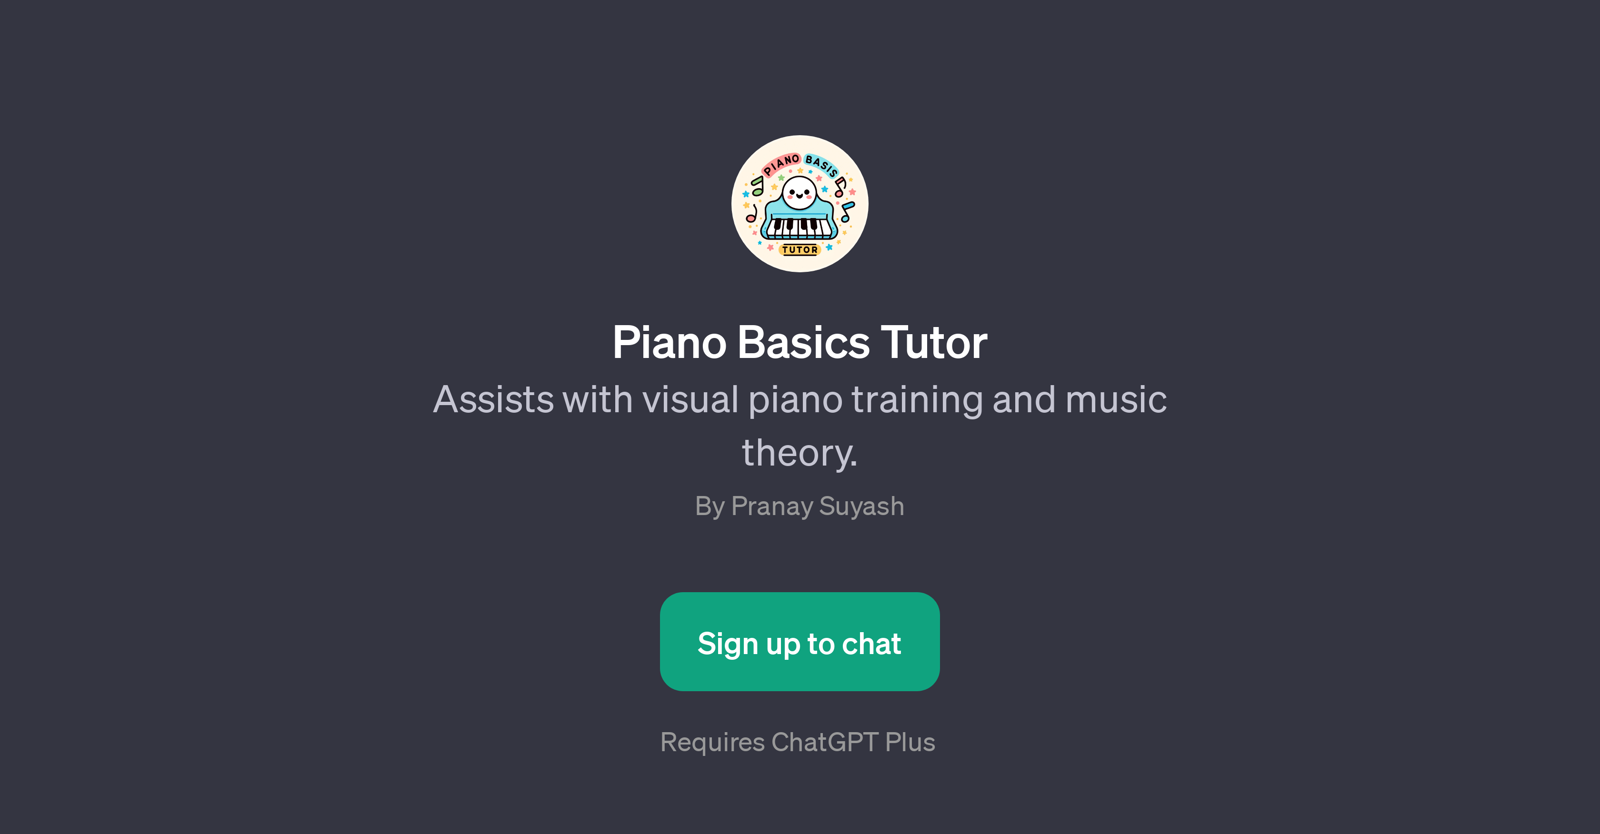 Piano Basics Tutor website